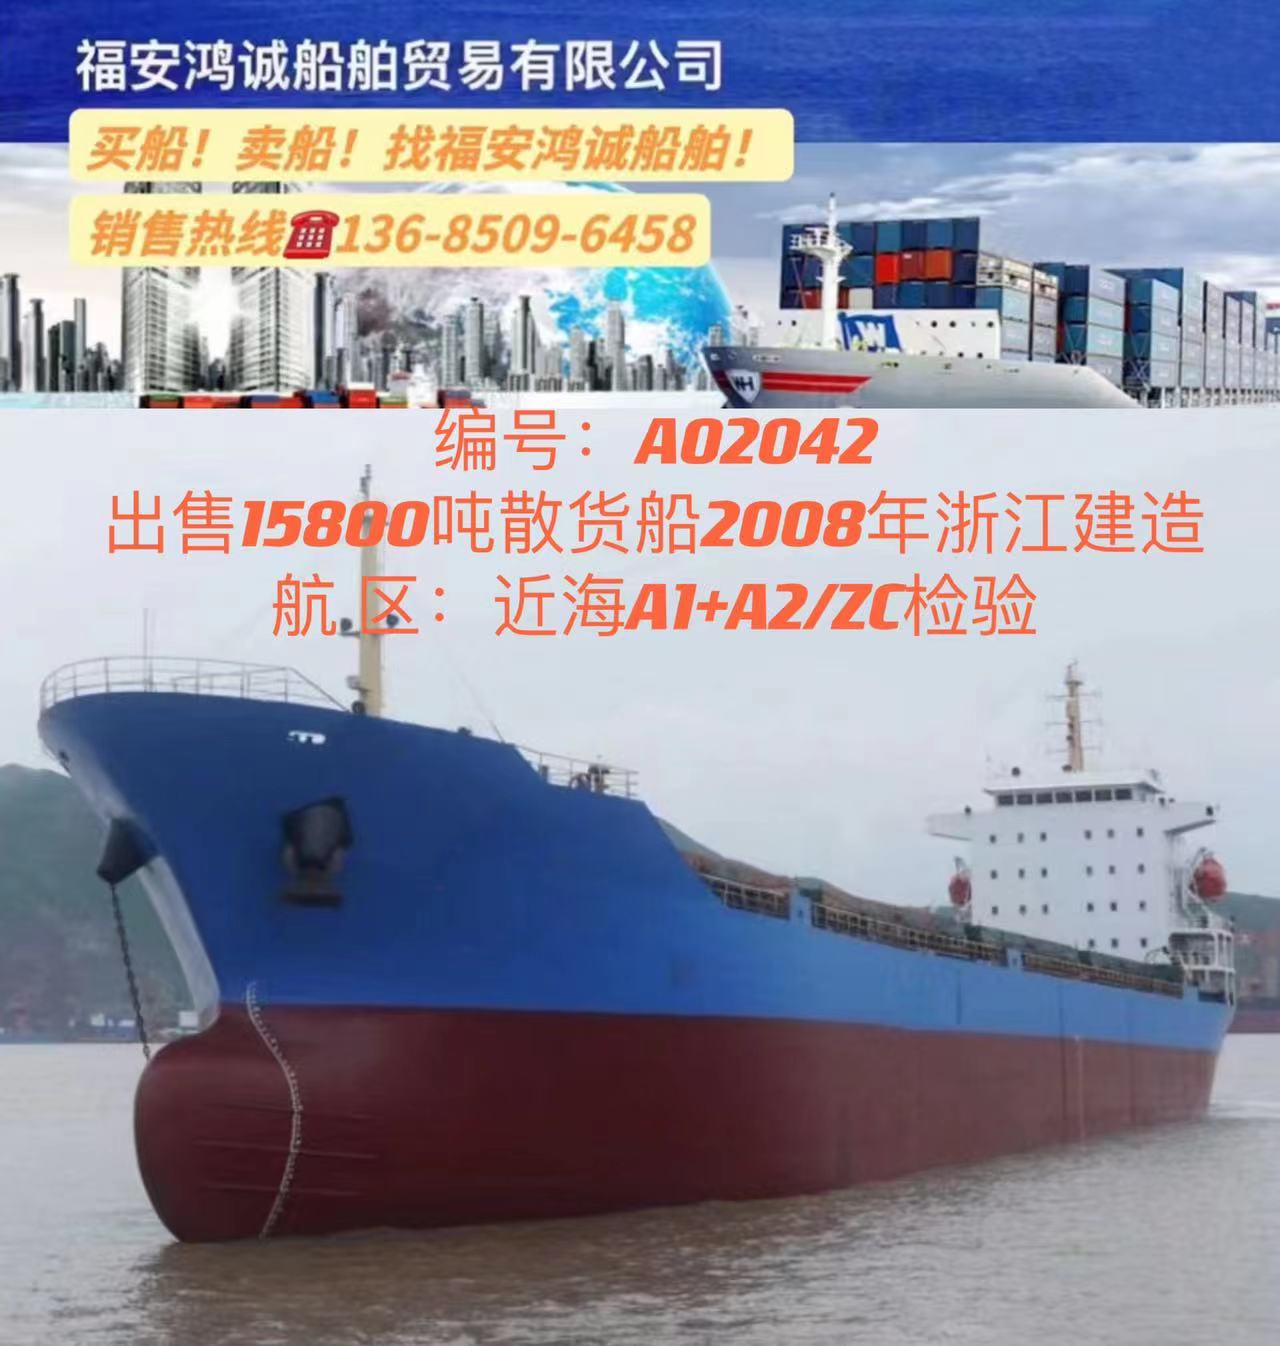 出售15800吨散货船： 2008年浙江建造/